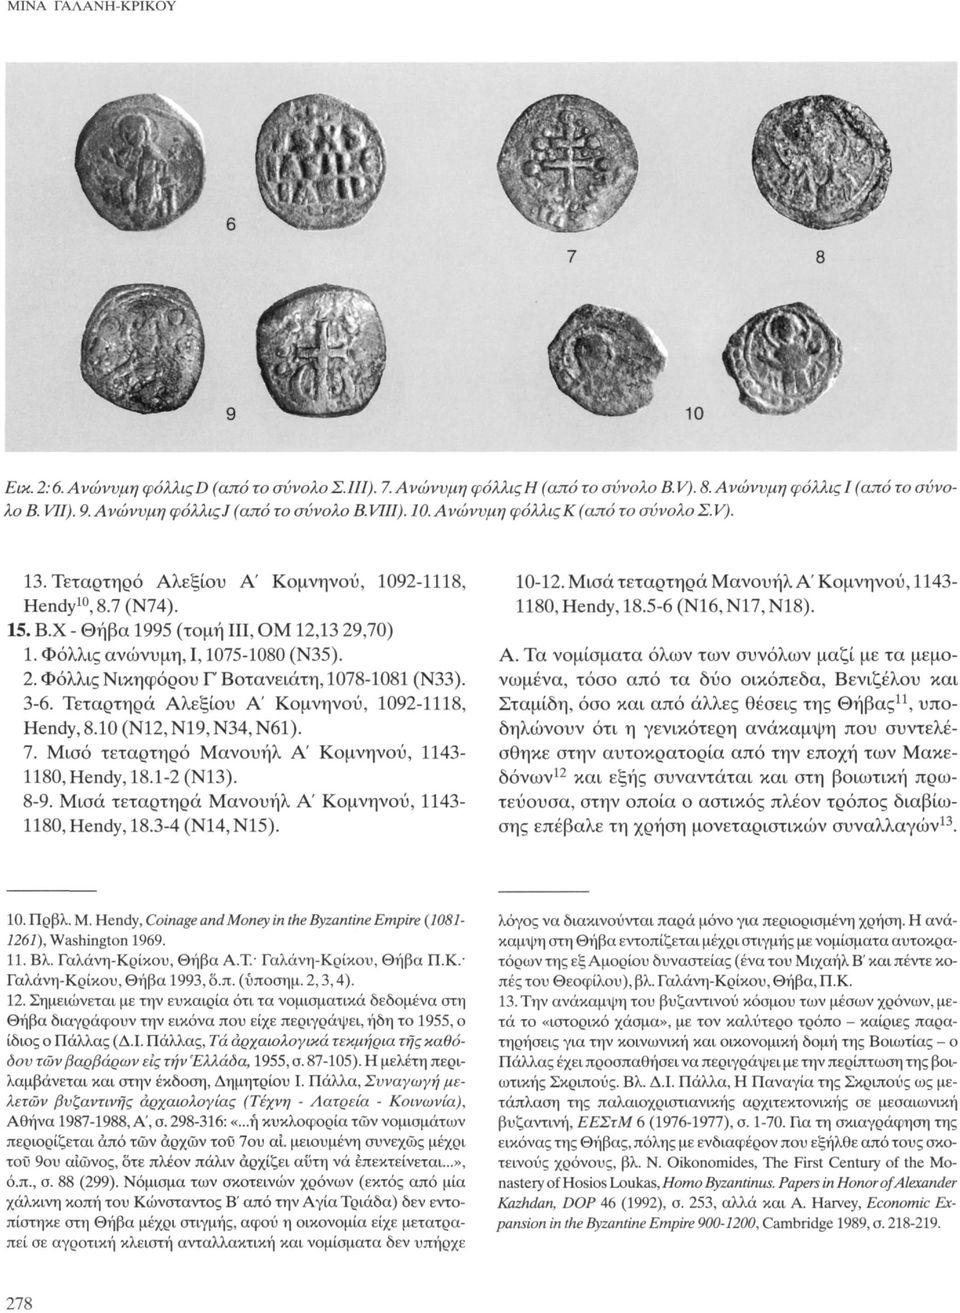 2. Φόλλις Νικηφόρου Γ Βοτανειάτη, 1078-1081 (Ν33). 3-6. Τεταρτηρά Αλεξίου Α' Κομνηνού, 1092-1118, Hendy, 8.10 (Ν12, Ν19, Ν34, Ν61). 7. Μισό τεταρτηρό Μανουήλ Α' Κομνηνού, 1143-1180, Hendy, 18.